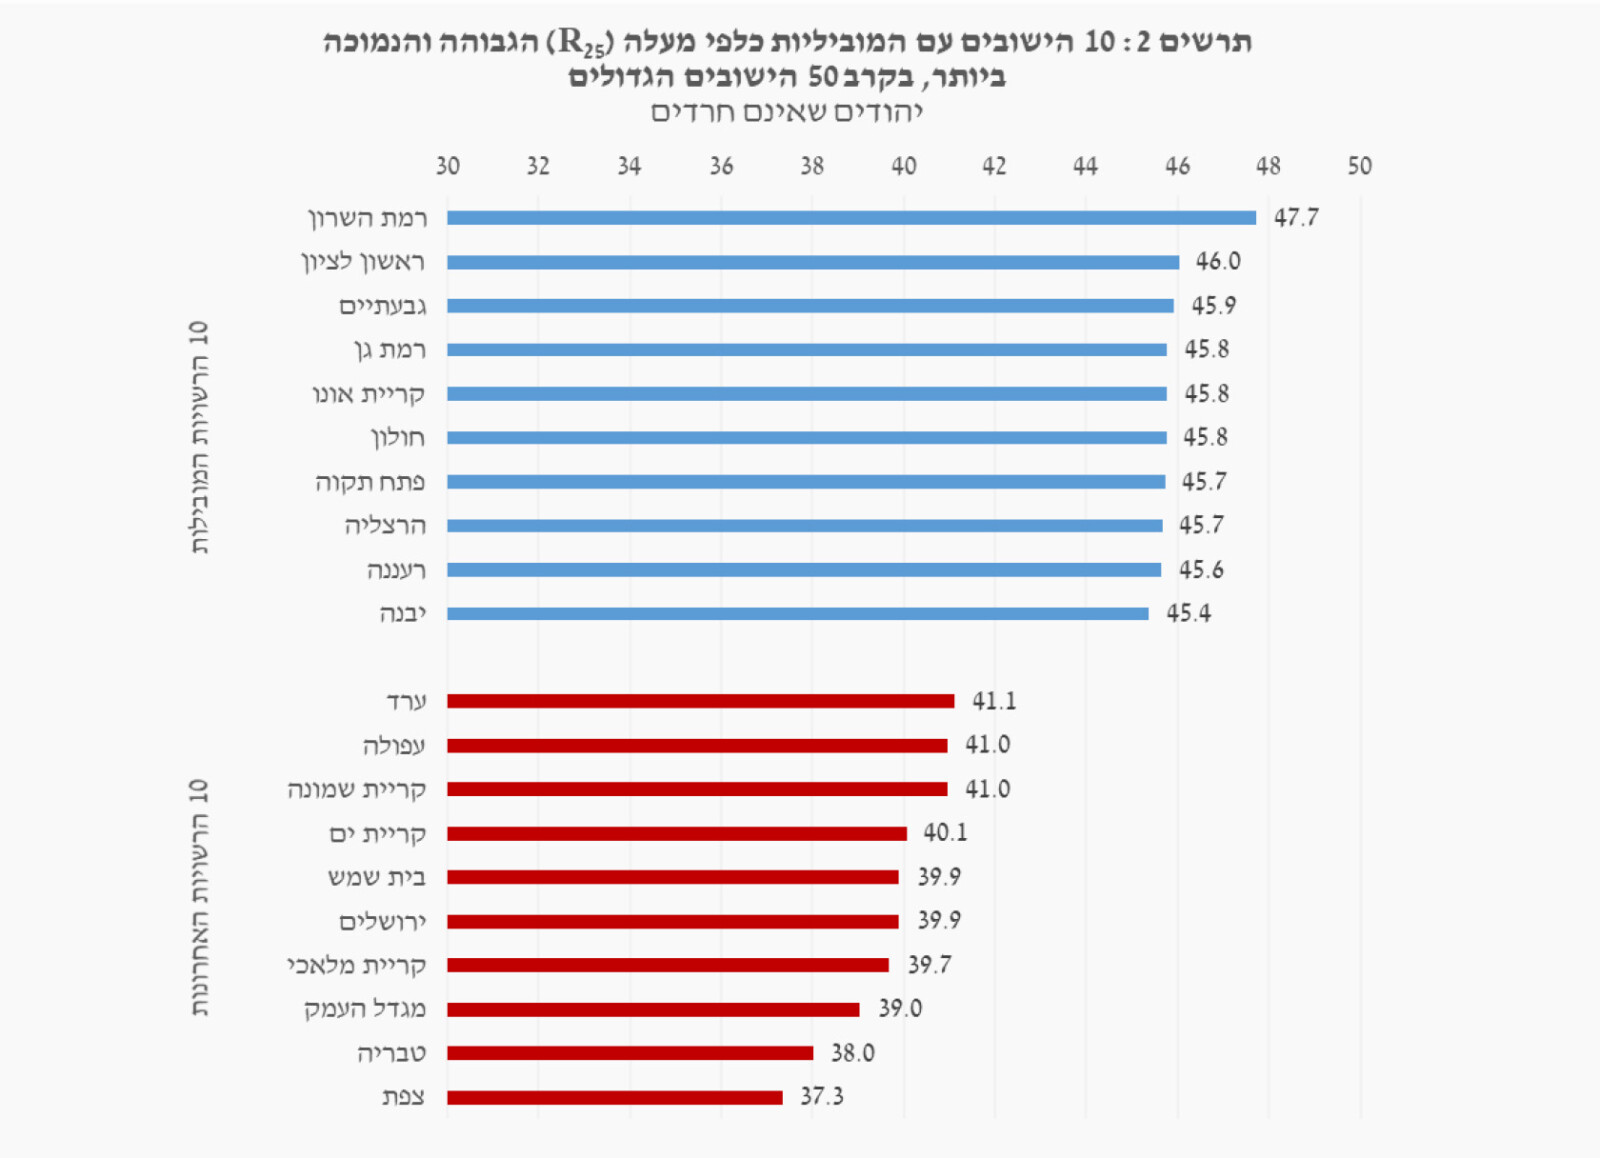 מוביליות כלכלית כלפי מעלה בערים הגדולות בישראל (מקור: דו״ח אגף הכלכלנית הראשית, משרד האוצר)